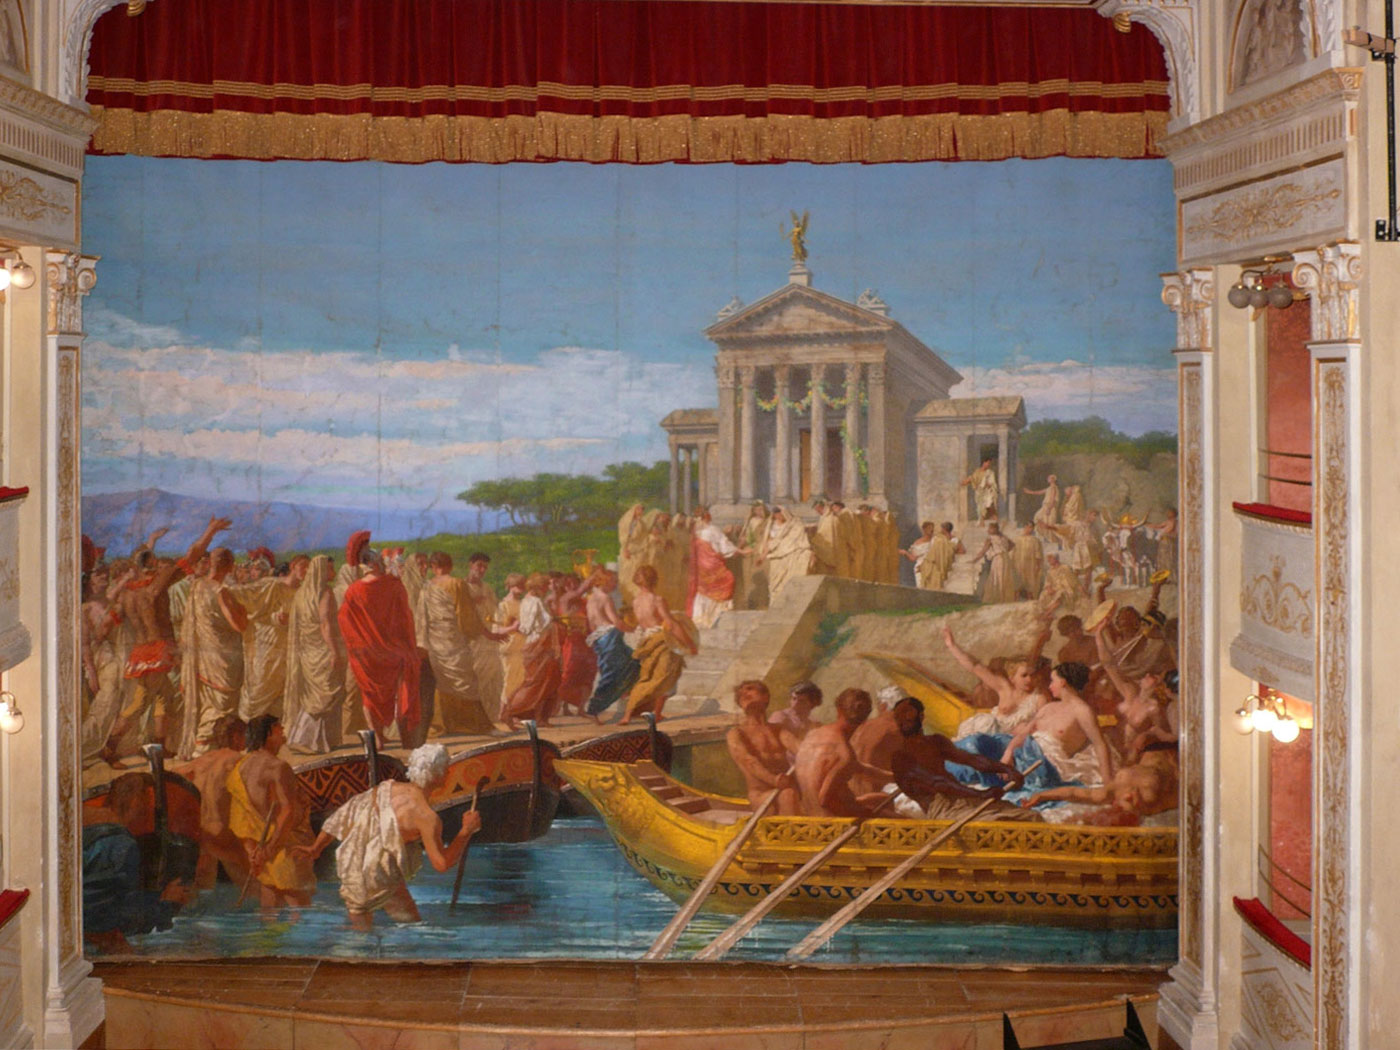 Trevi, Italy. Teatro Clitunno, sipario. L'imperatore Caligola offre sacrifici al dio Clitunno.